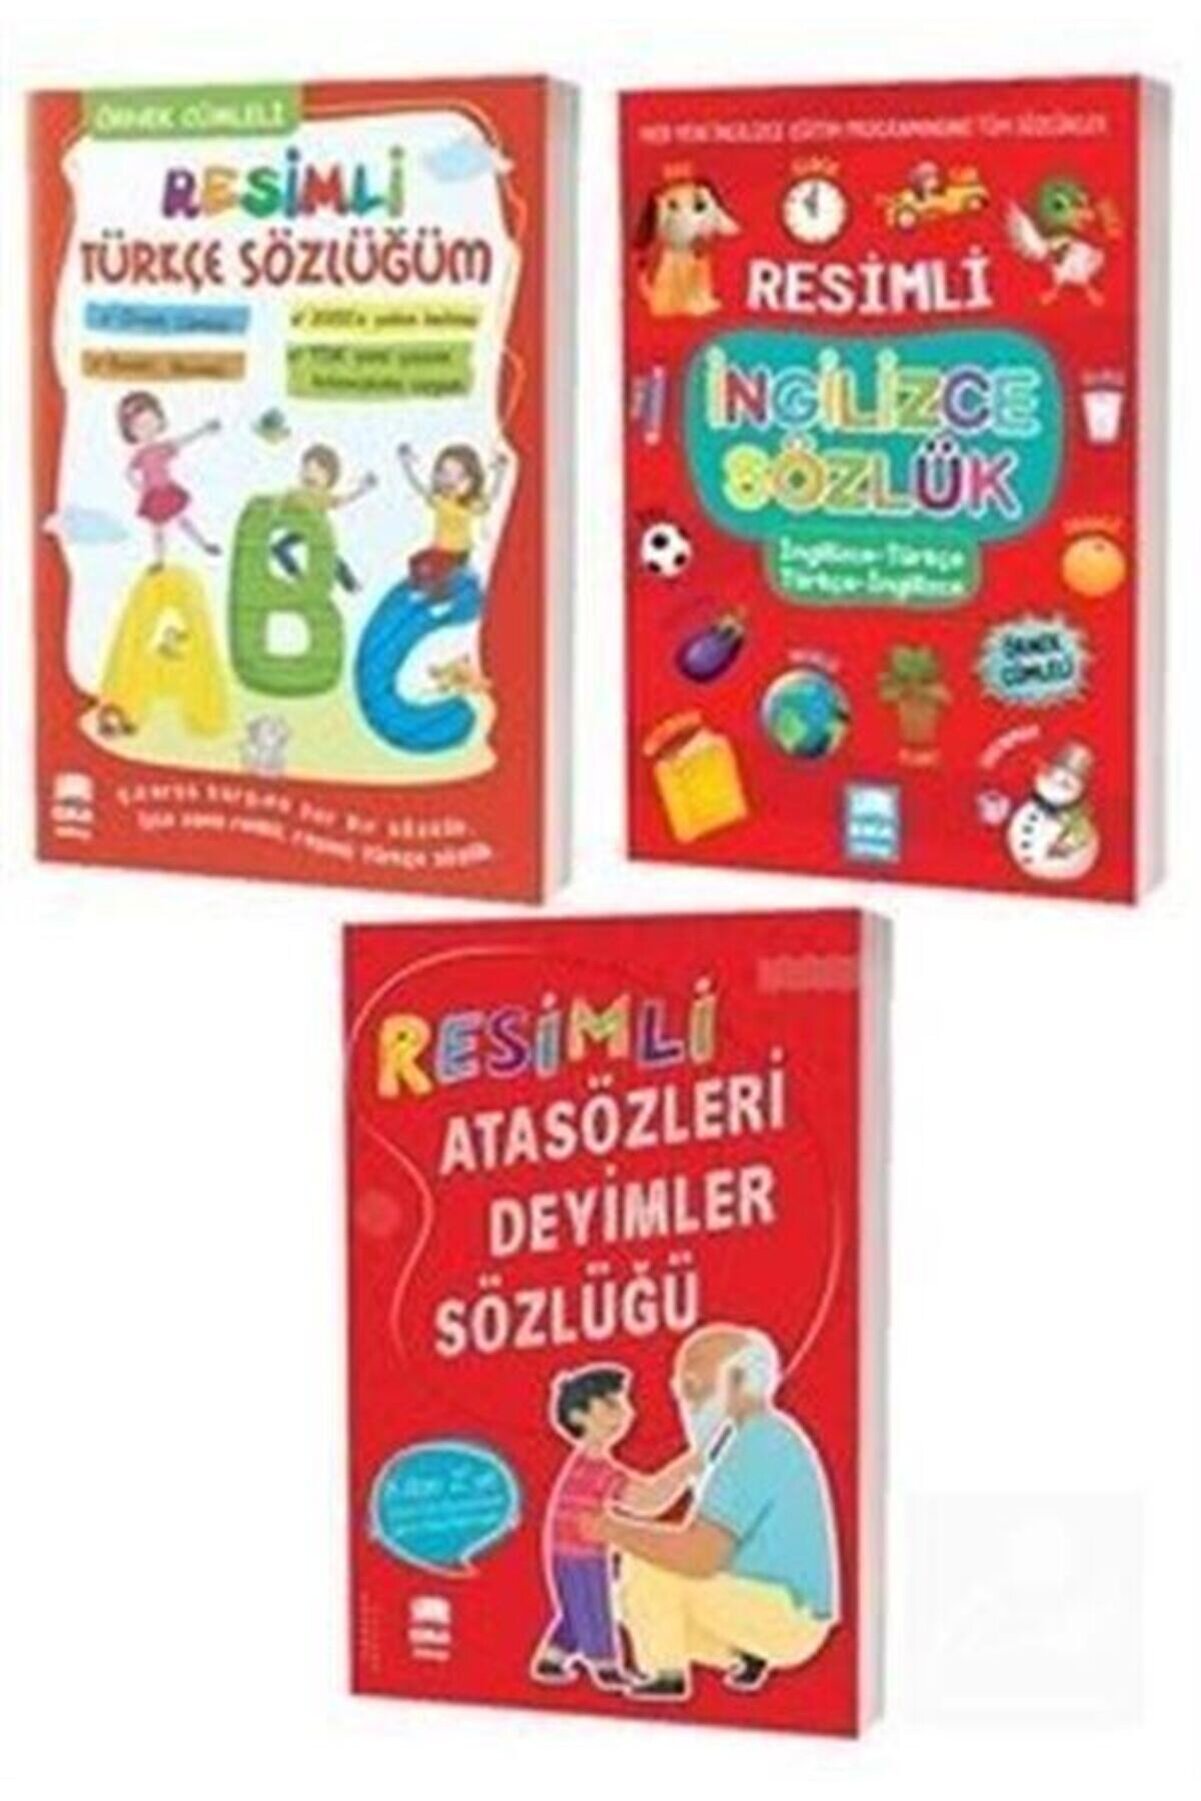 Ema Kitap Resimli Türkçe Ingilizce Ve Atasözleri Deyimler Sözlükleri - 3 Kitap Set Tdk Uyumlu